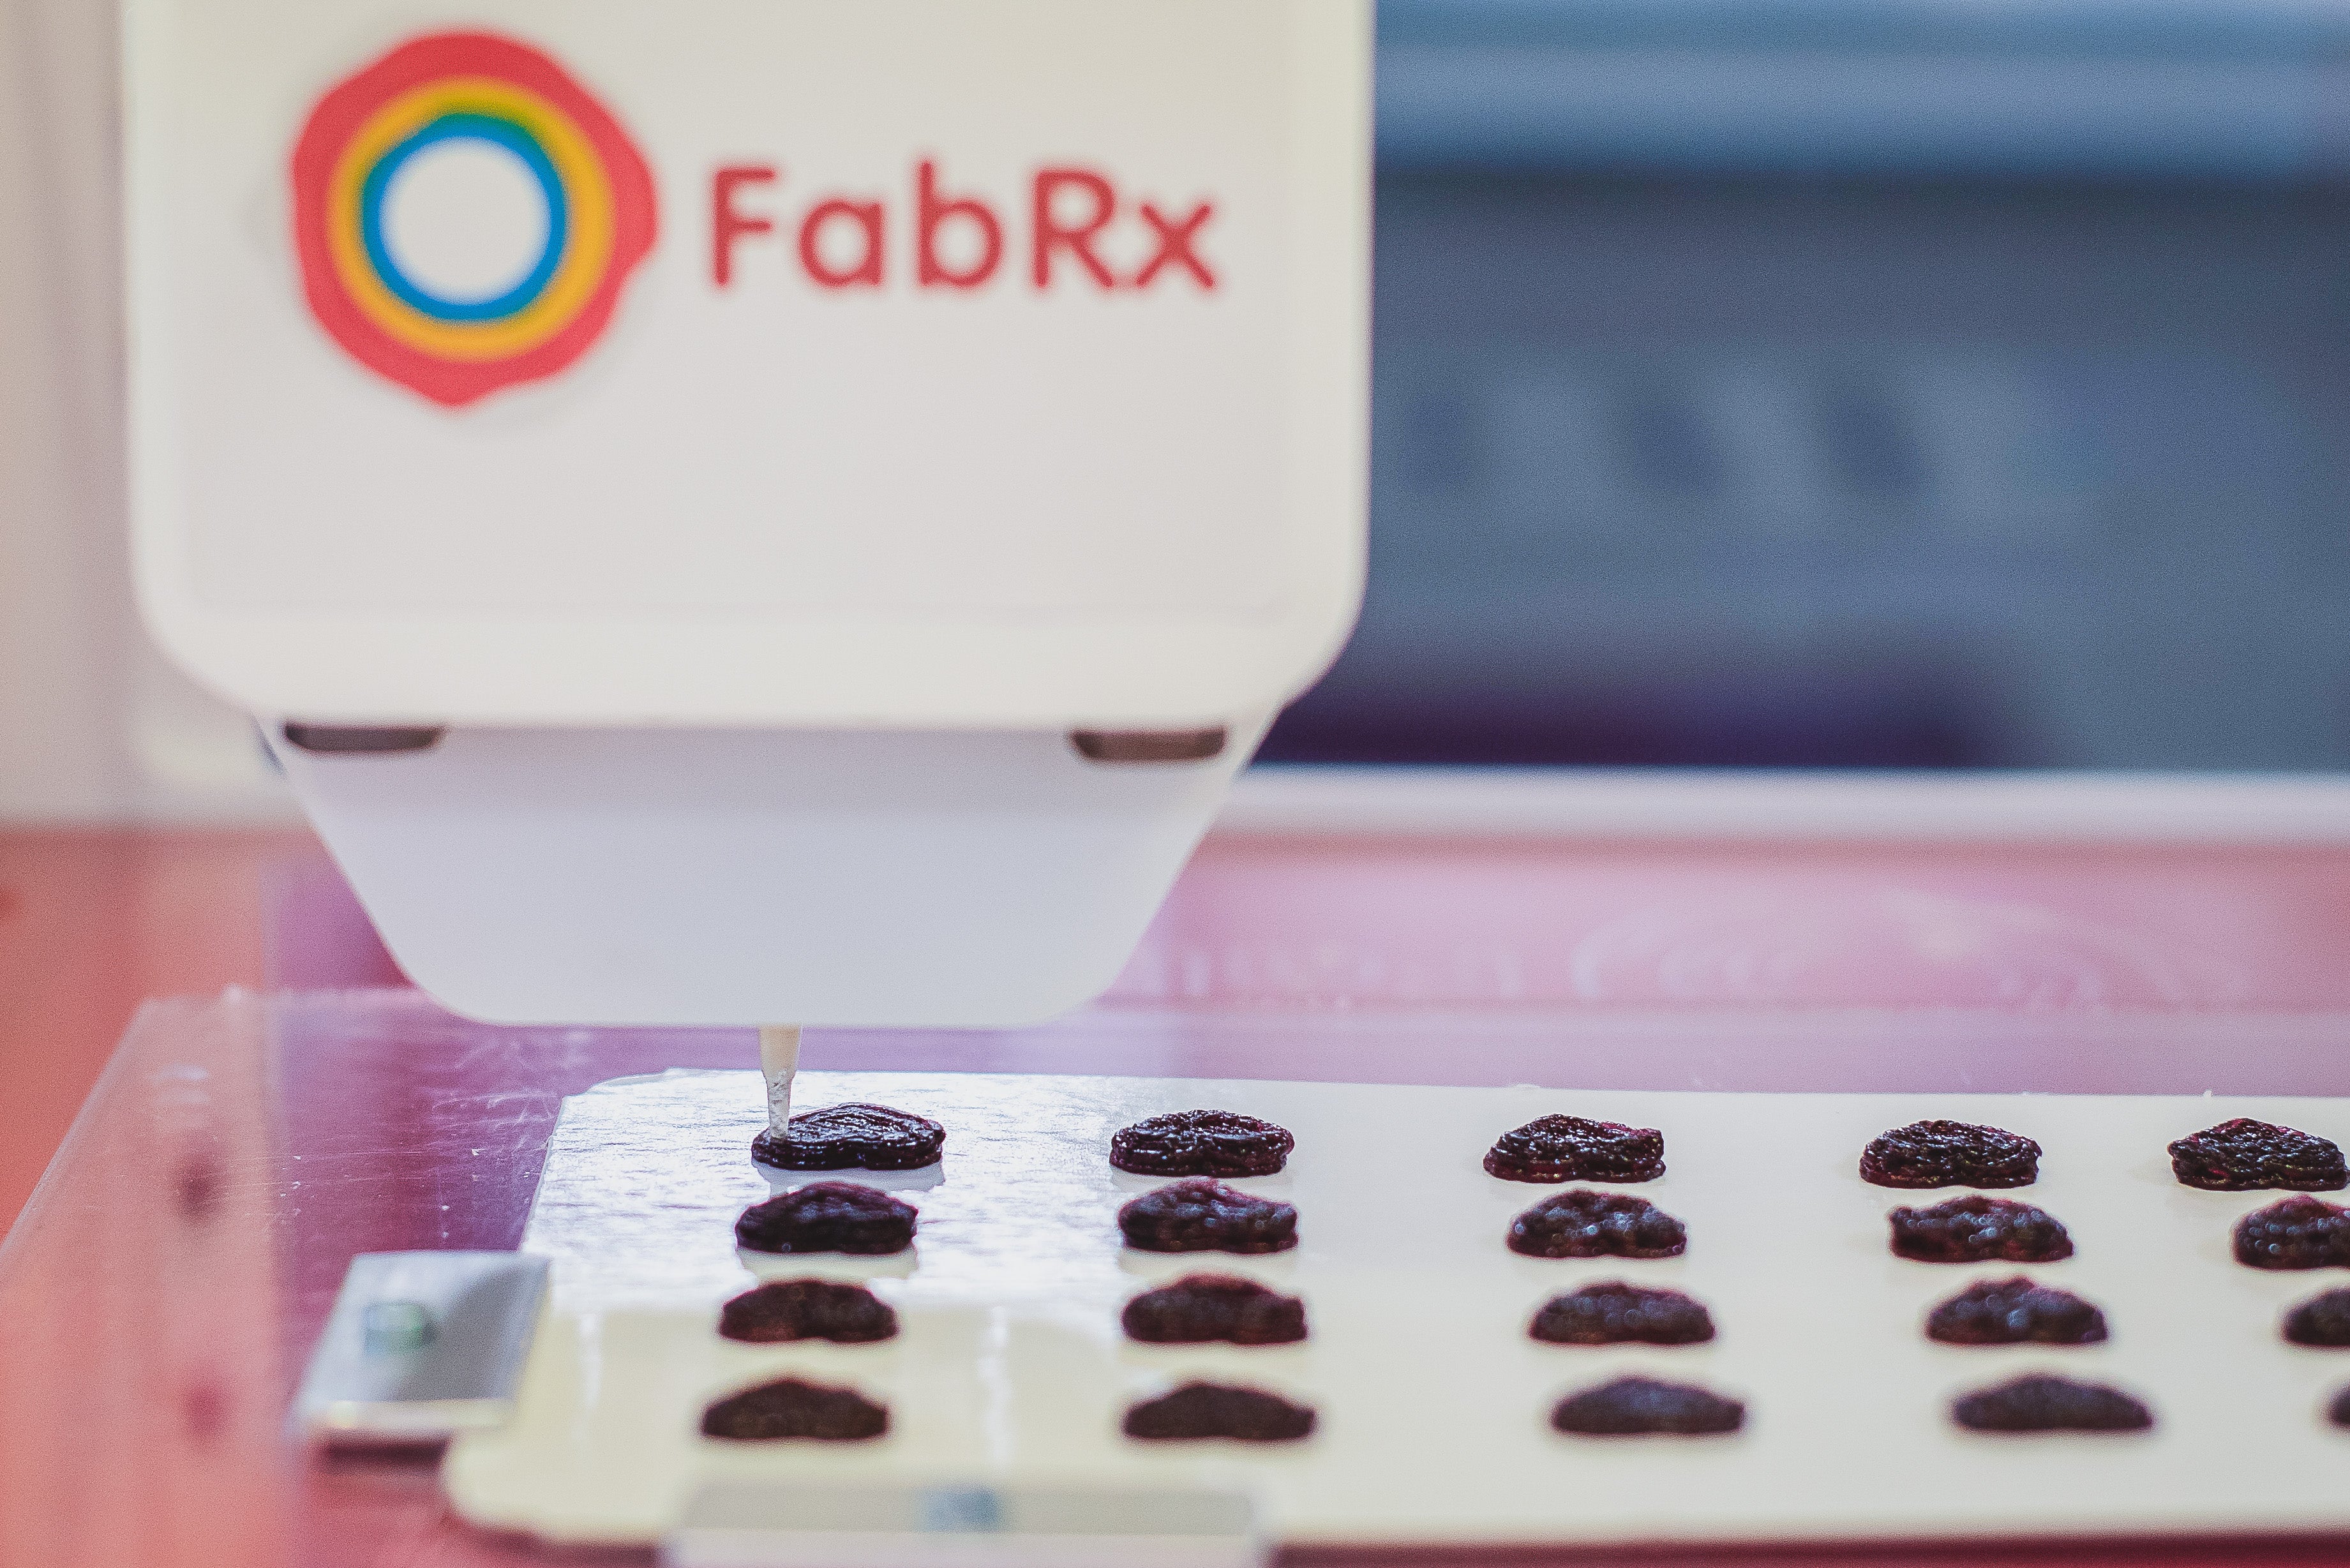 FabRx 3D printed medicine